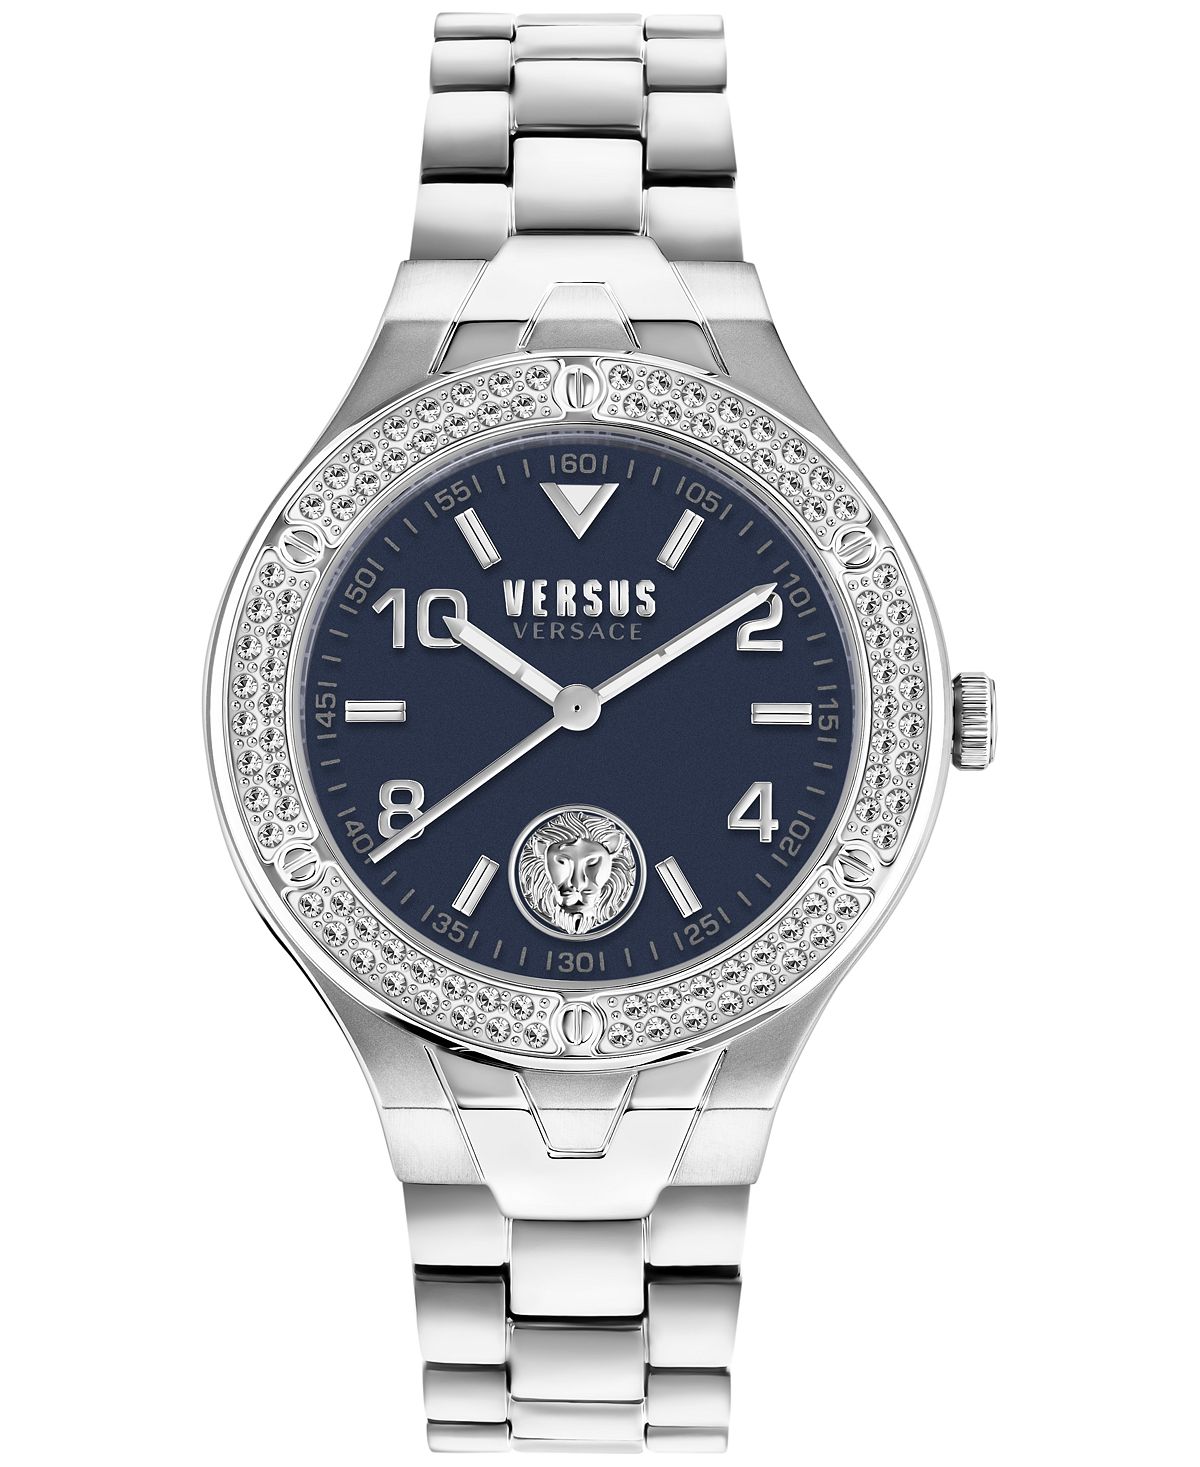 Женские часы Vittoria 38 мм Versus Versace, серебро